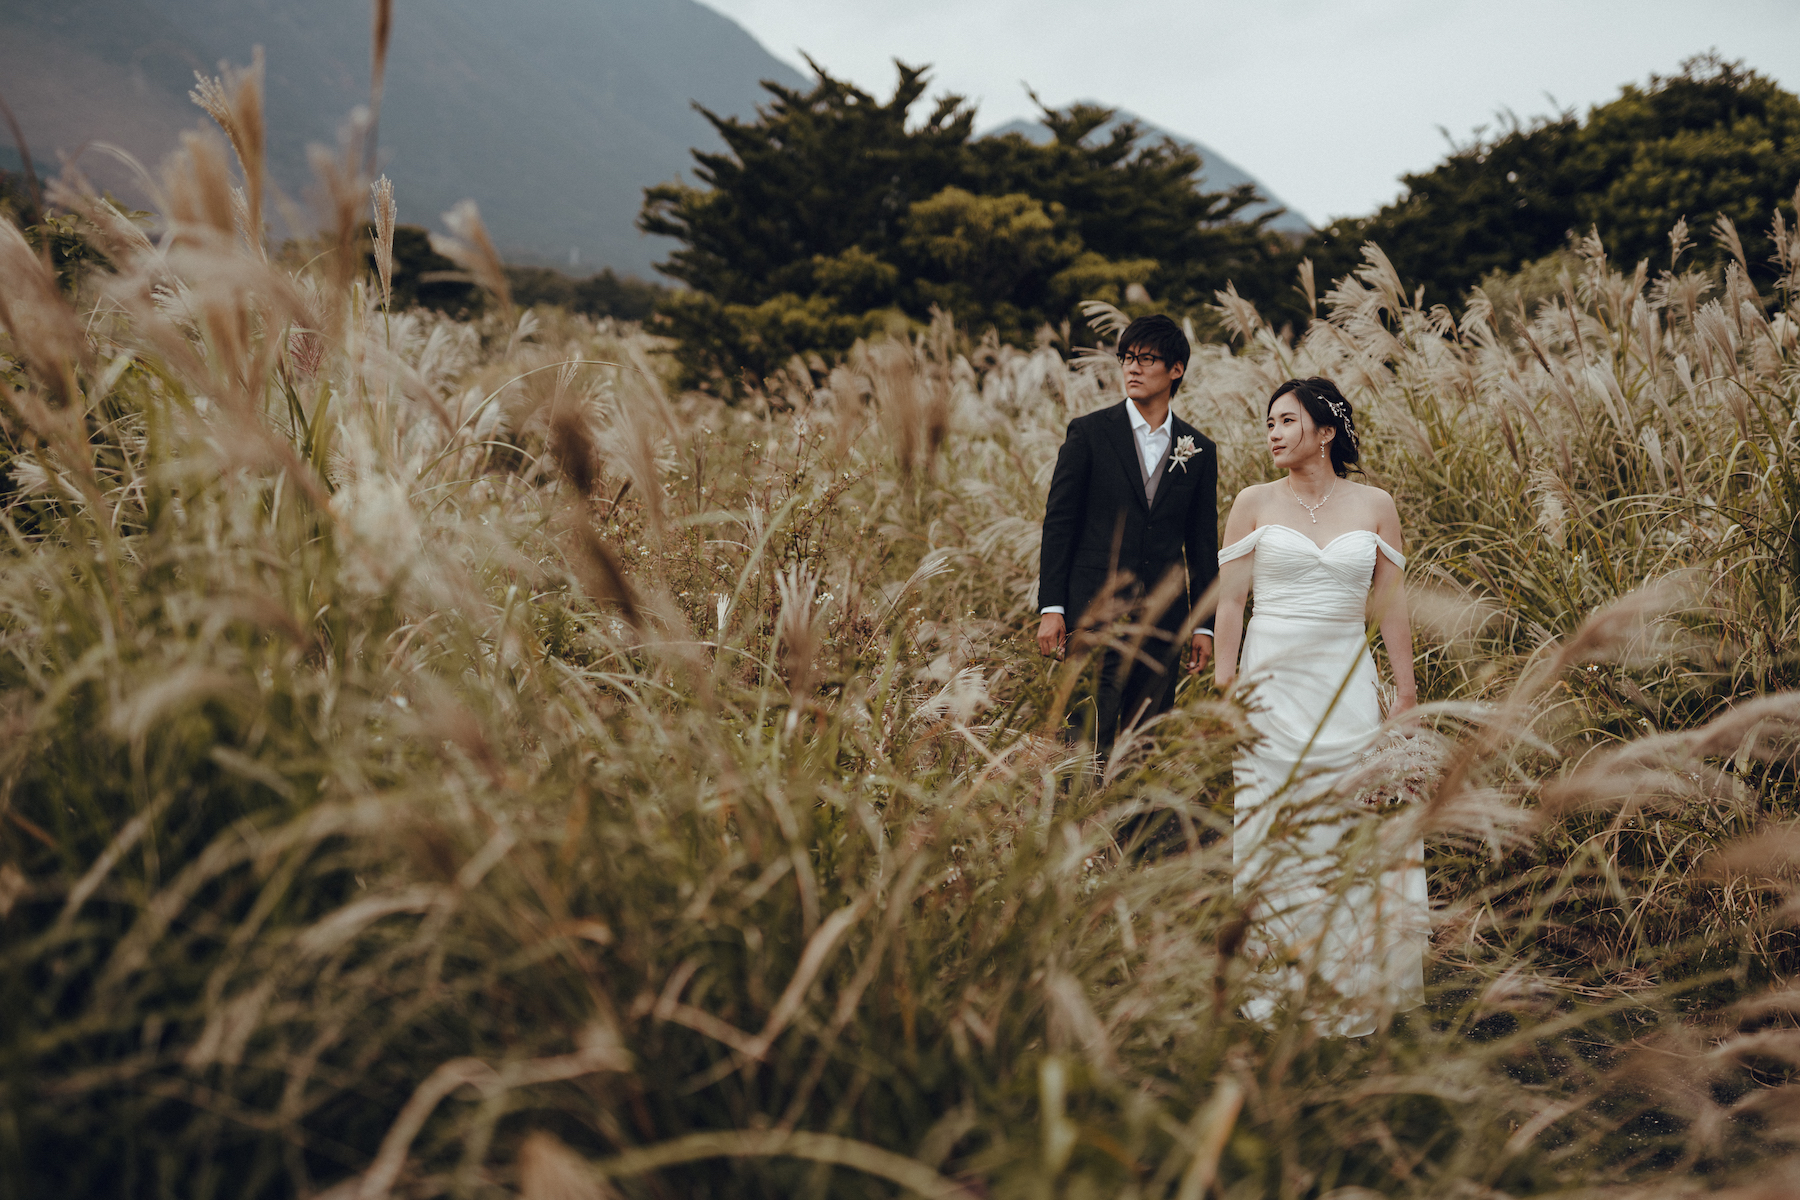 Yakushima Life and Wedding